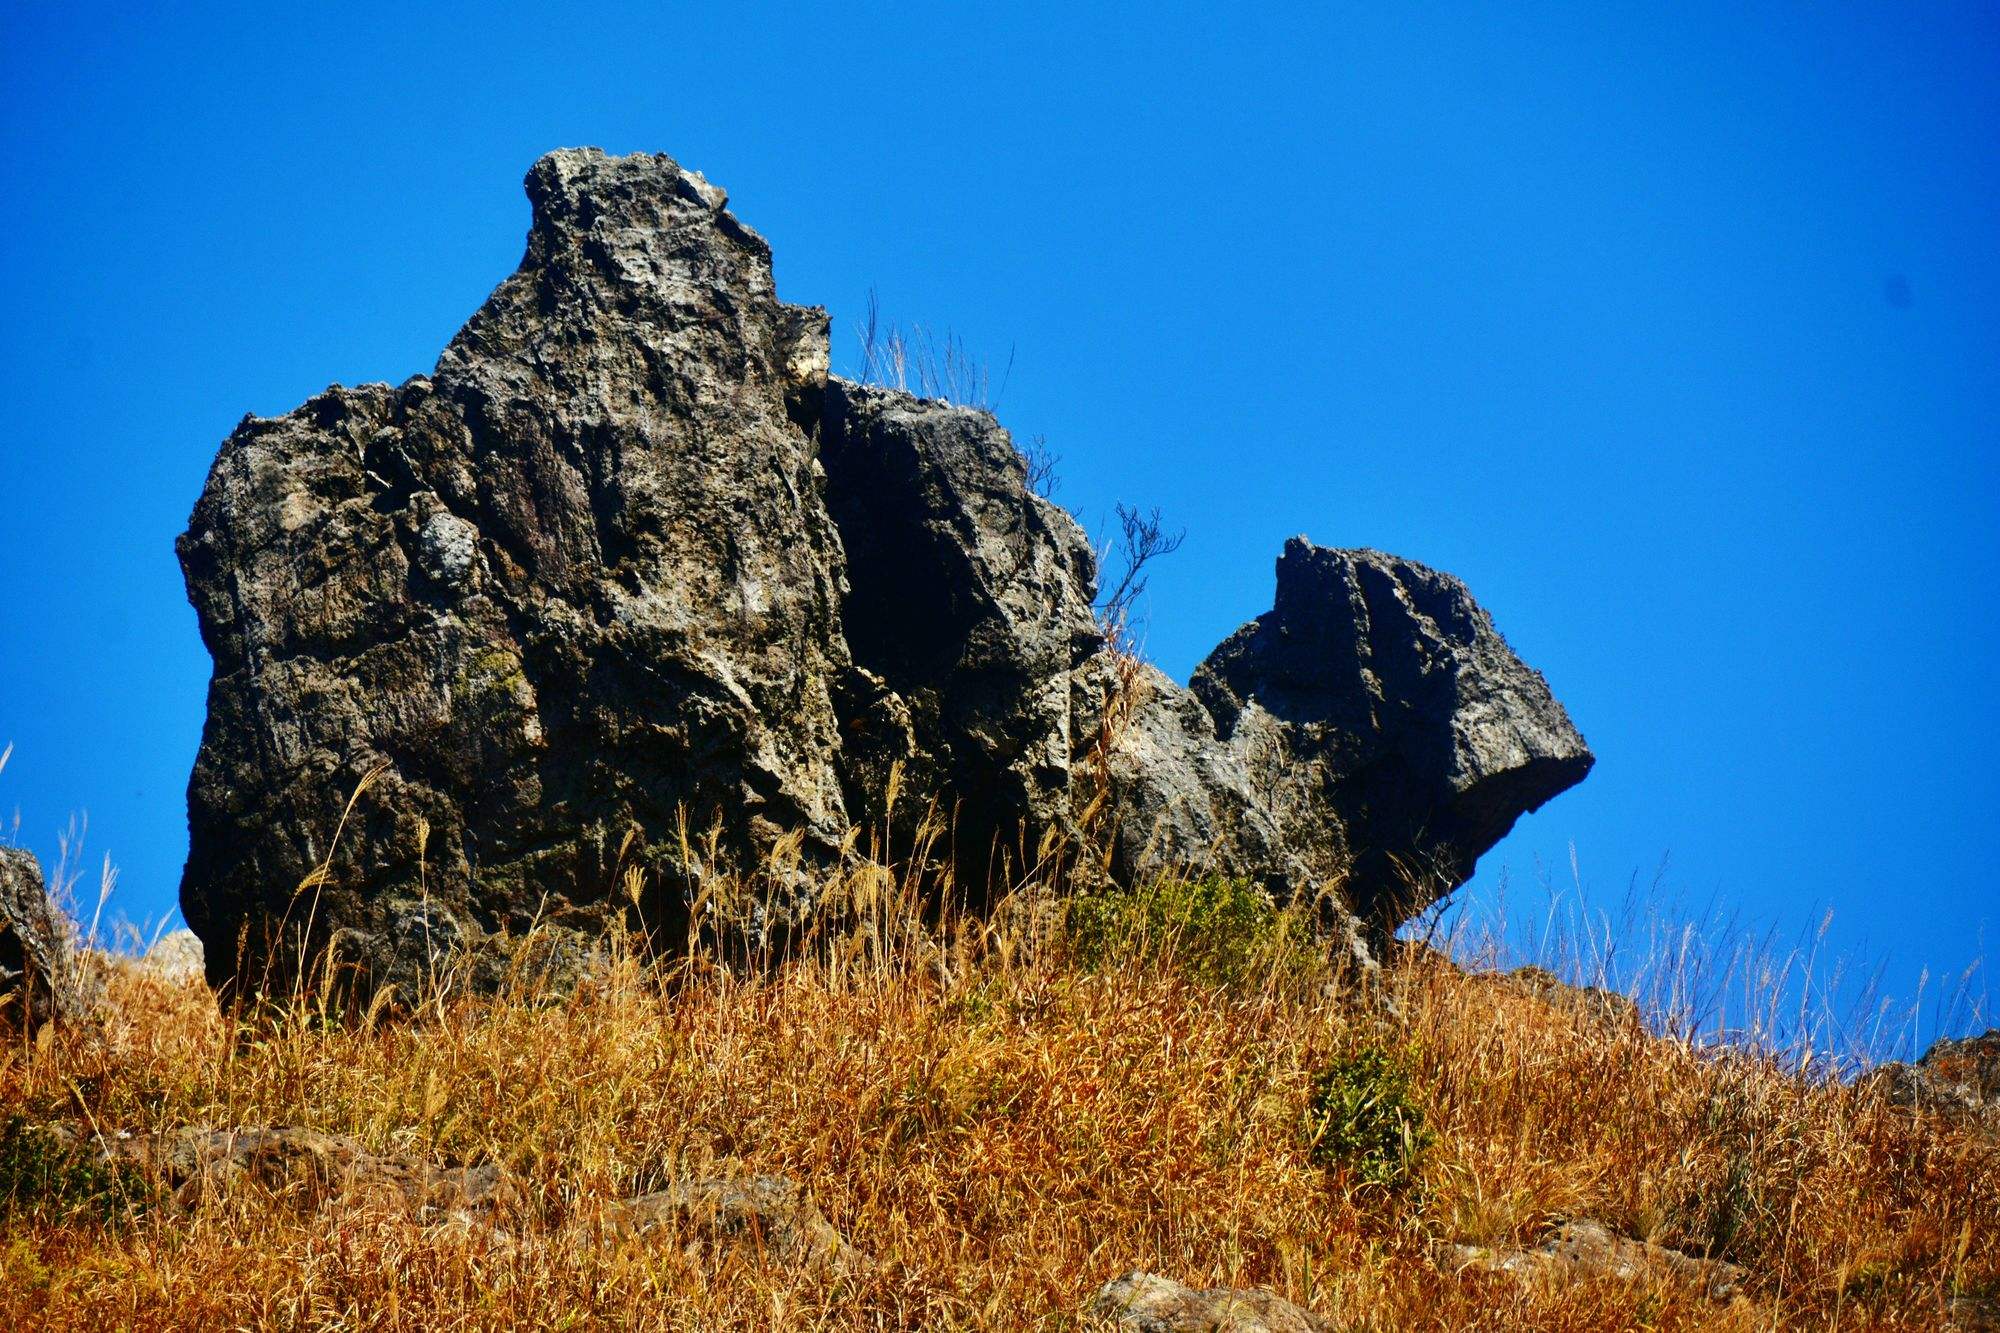 福建龙岩:梦幻般的双髻山云海,气势磅礴,蔚为壮观!